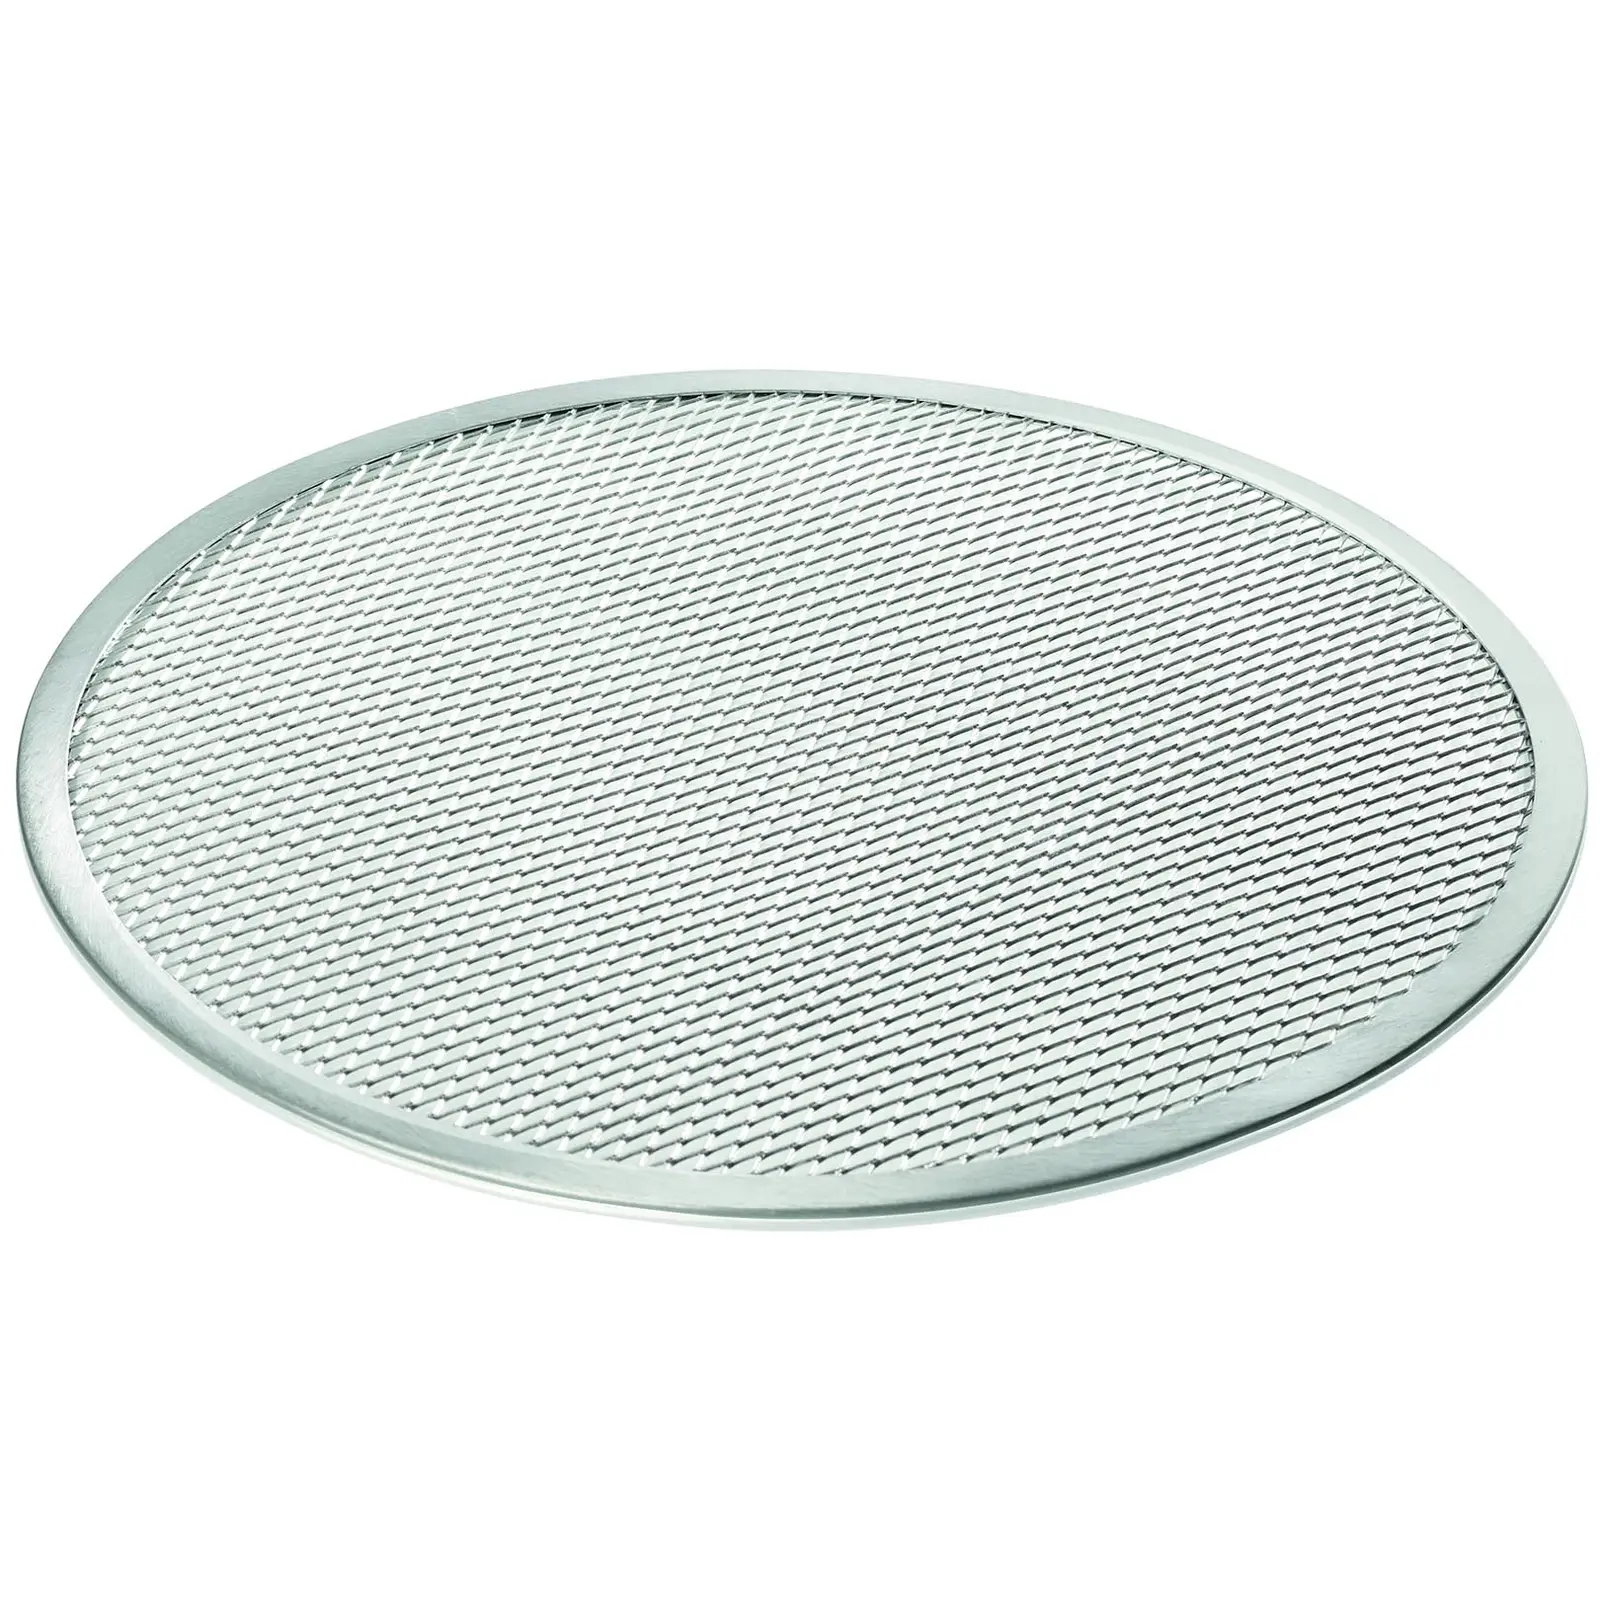 Plaque pizza - Ø36 cm - grille aluminium